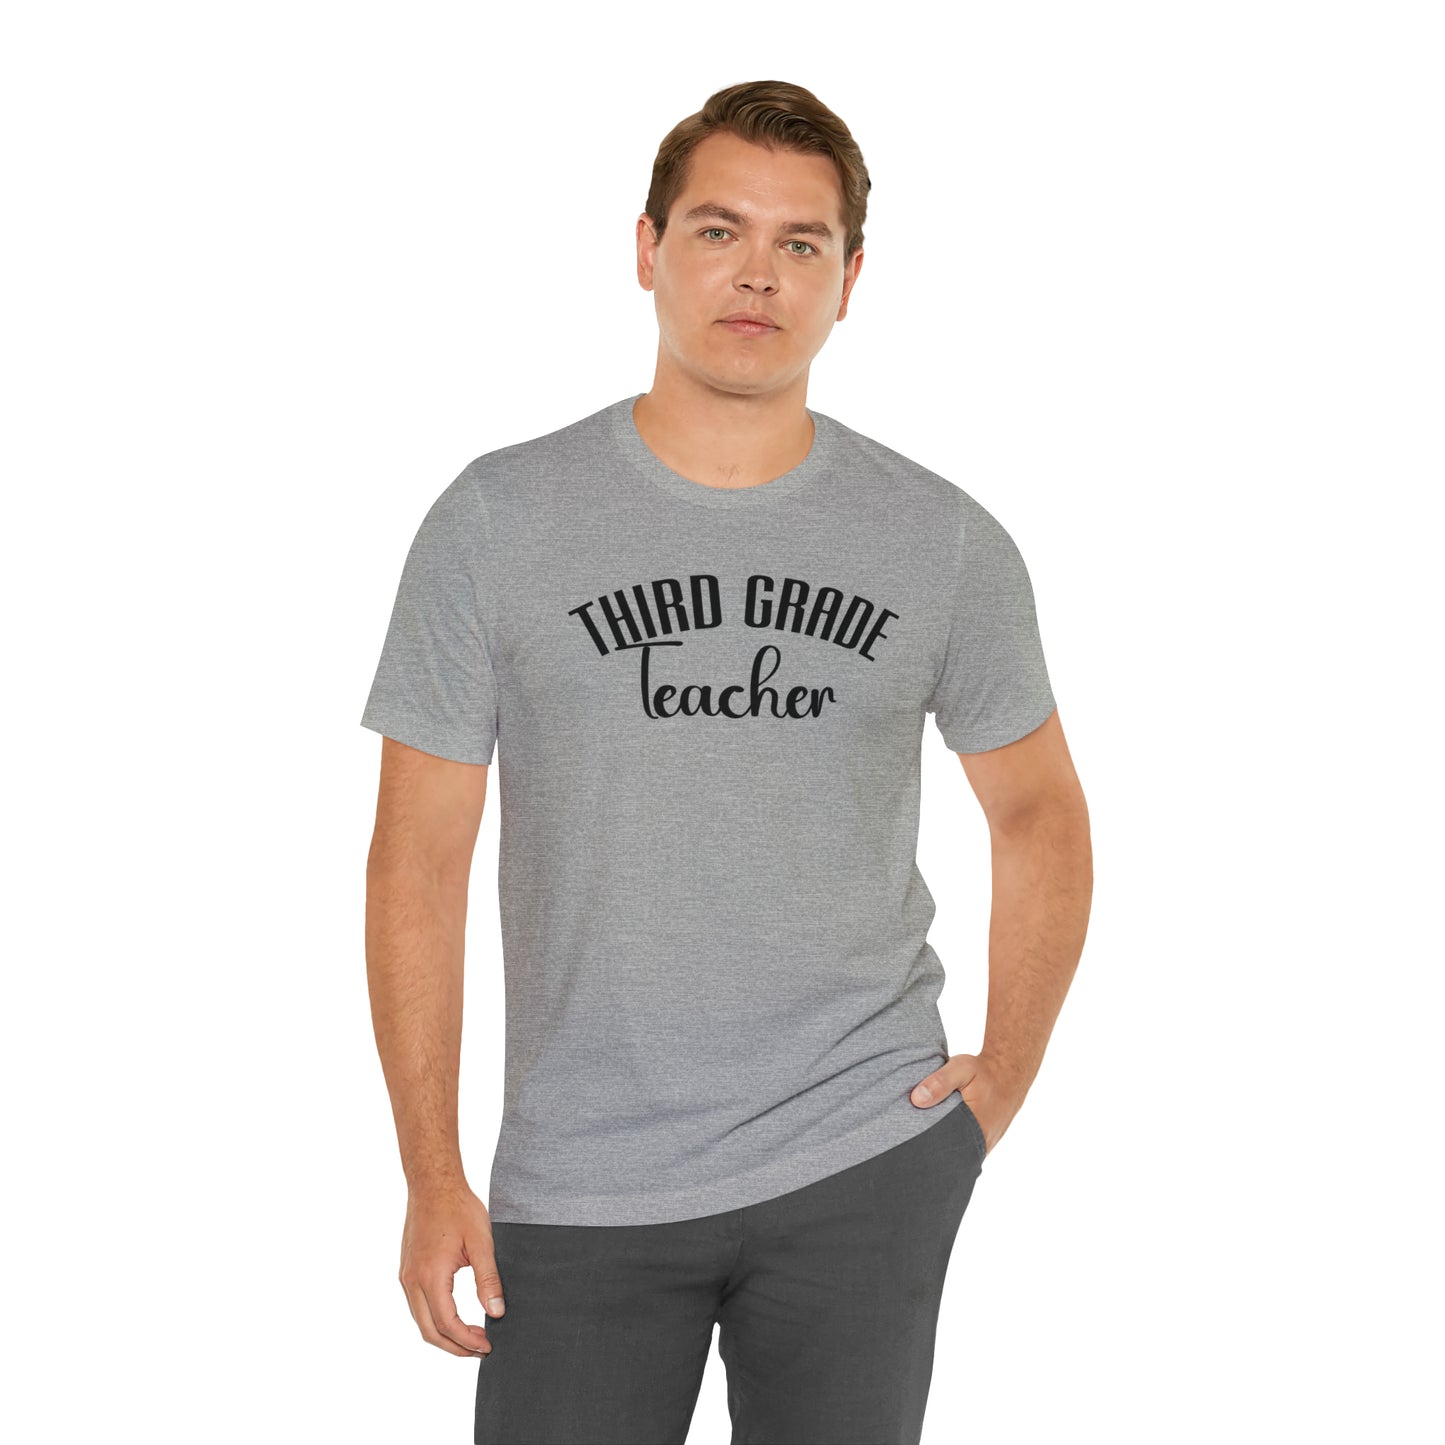 Cute Teacher Shirt, Third Grade Teacher Shirt, Teacher Appreciation Shirt, Best Teacher Shirt, School Shirt, T517